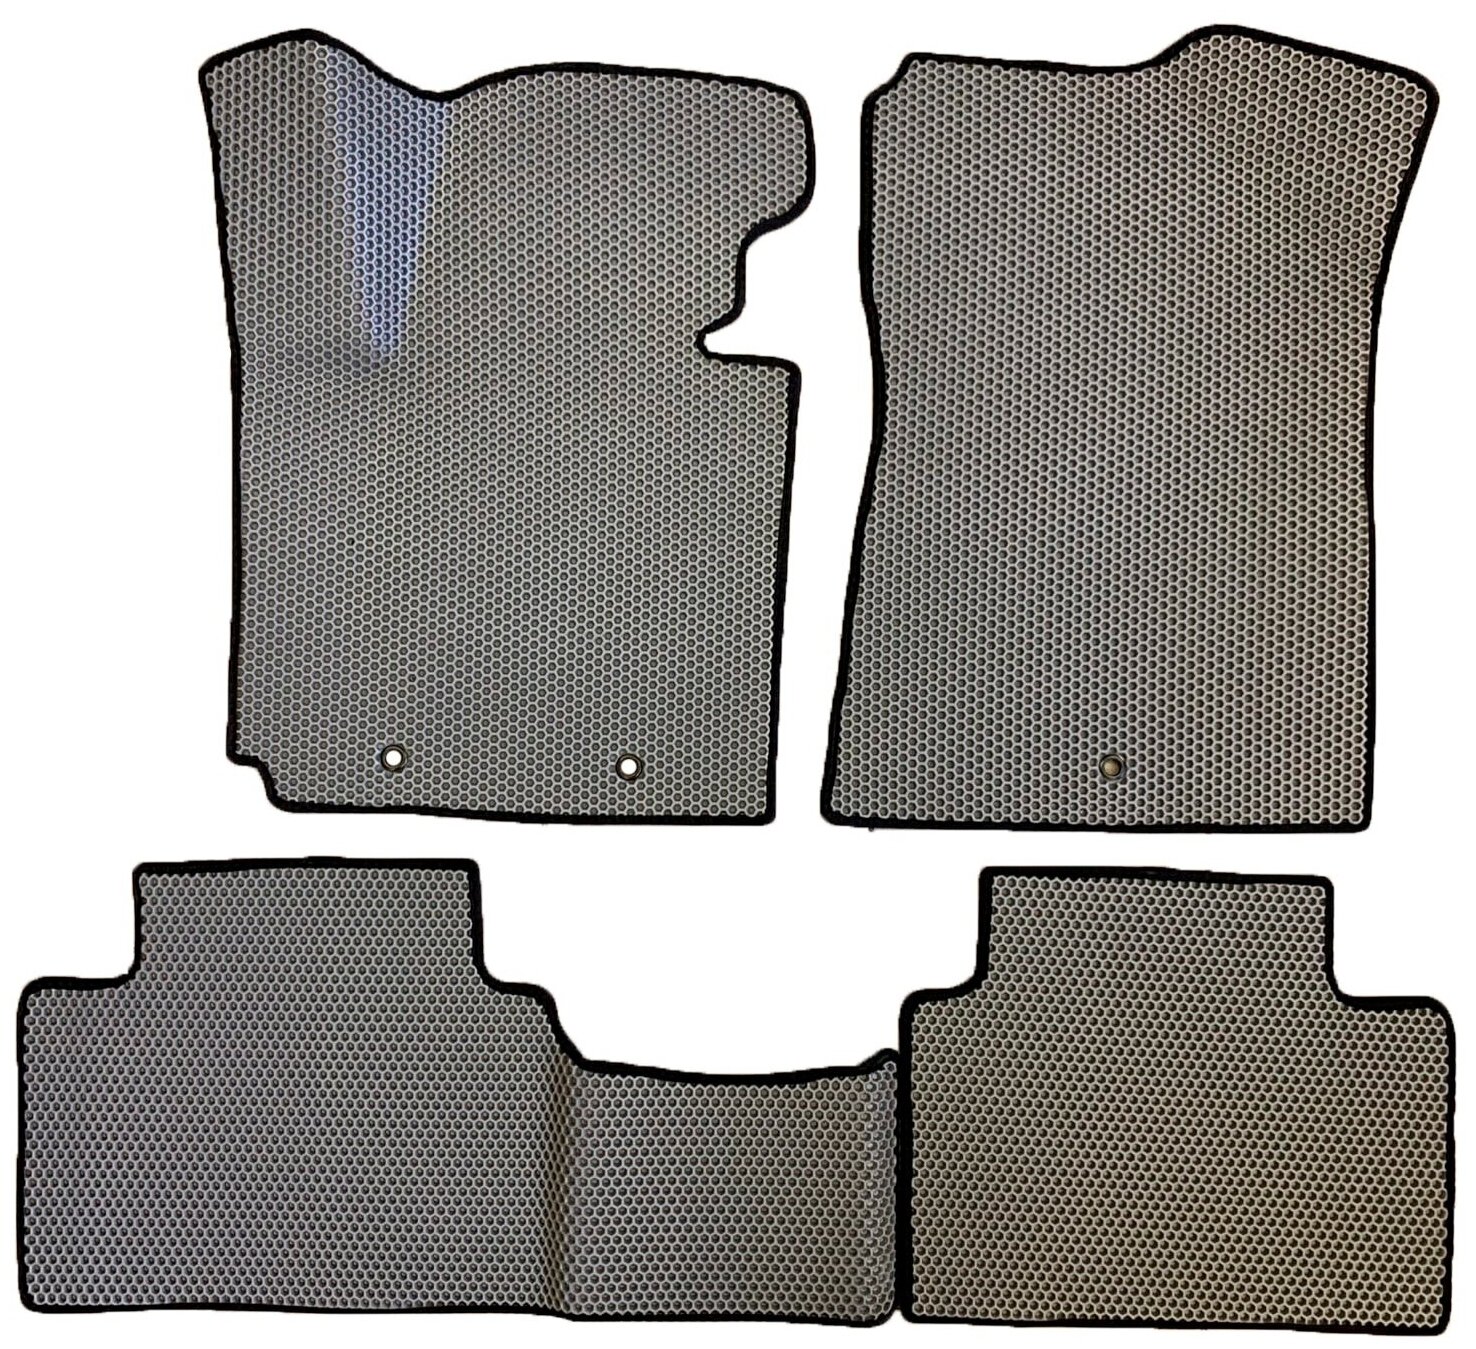 ЕВА коврики для Kia Soul 2 (2013-2019) / Киа Соул 2, 3Д лапка - без разреза / Серые соты / Черный кант / Комплект 4 шт.